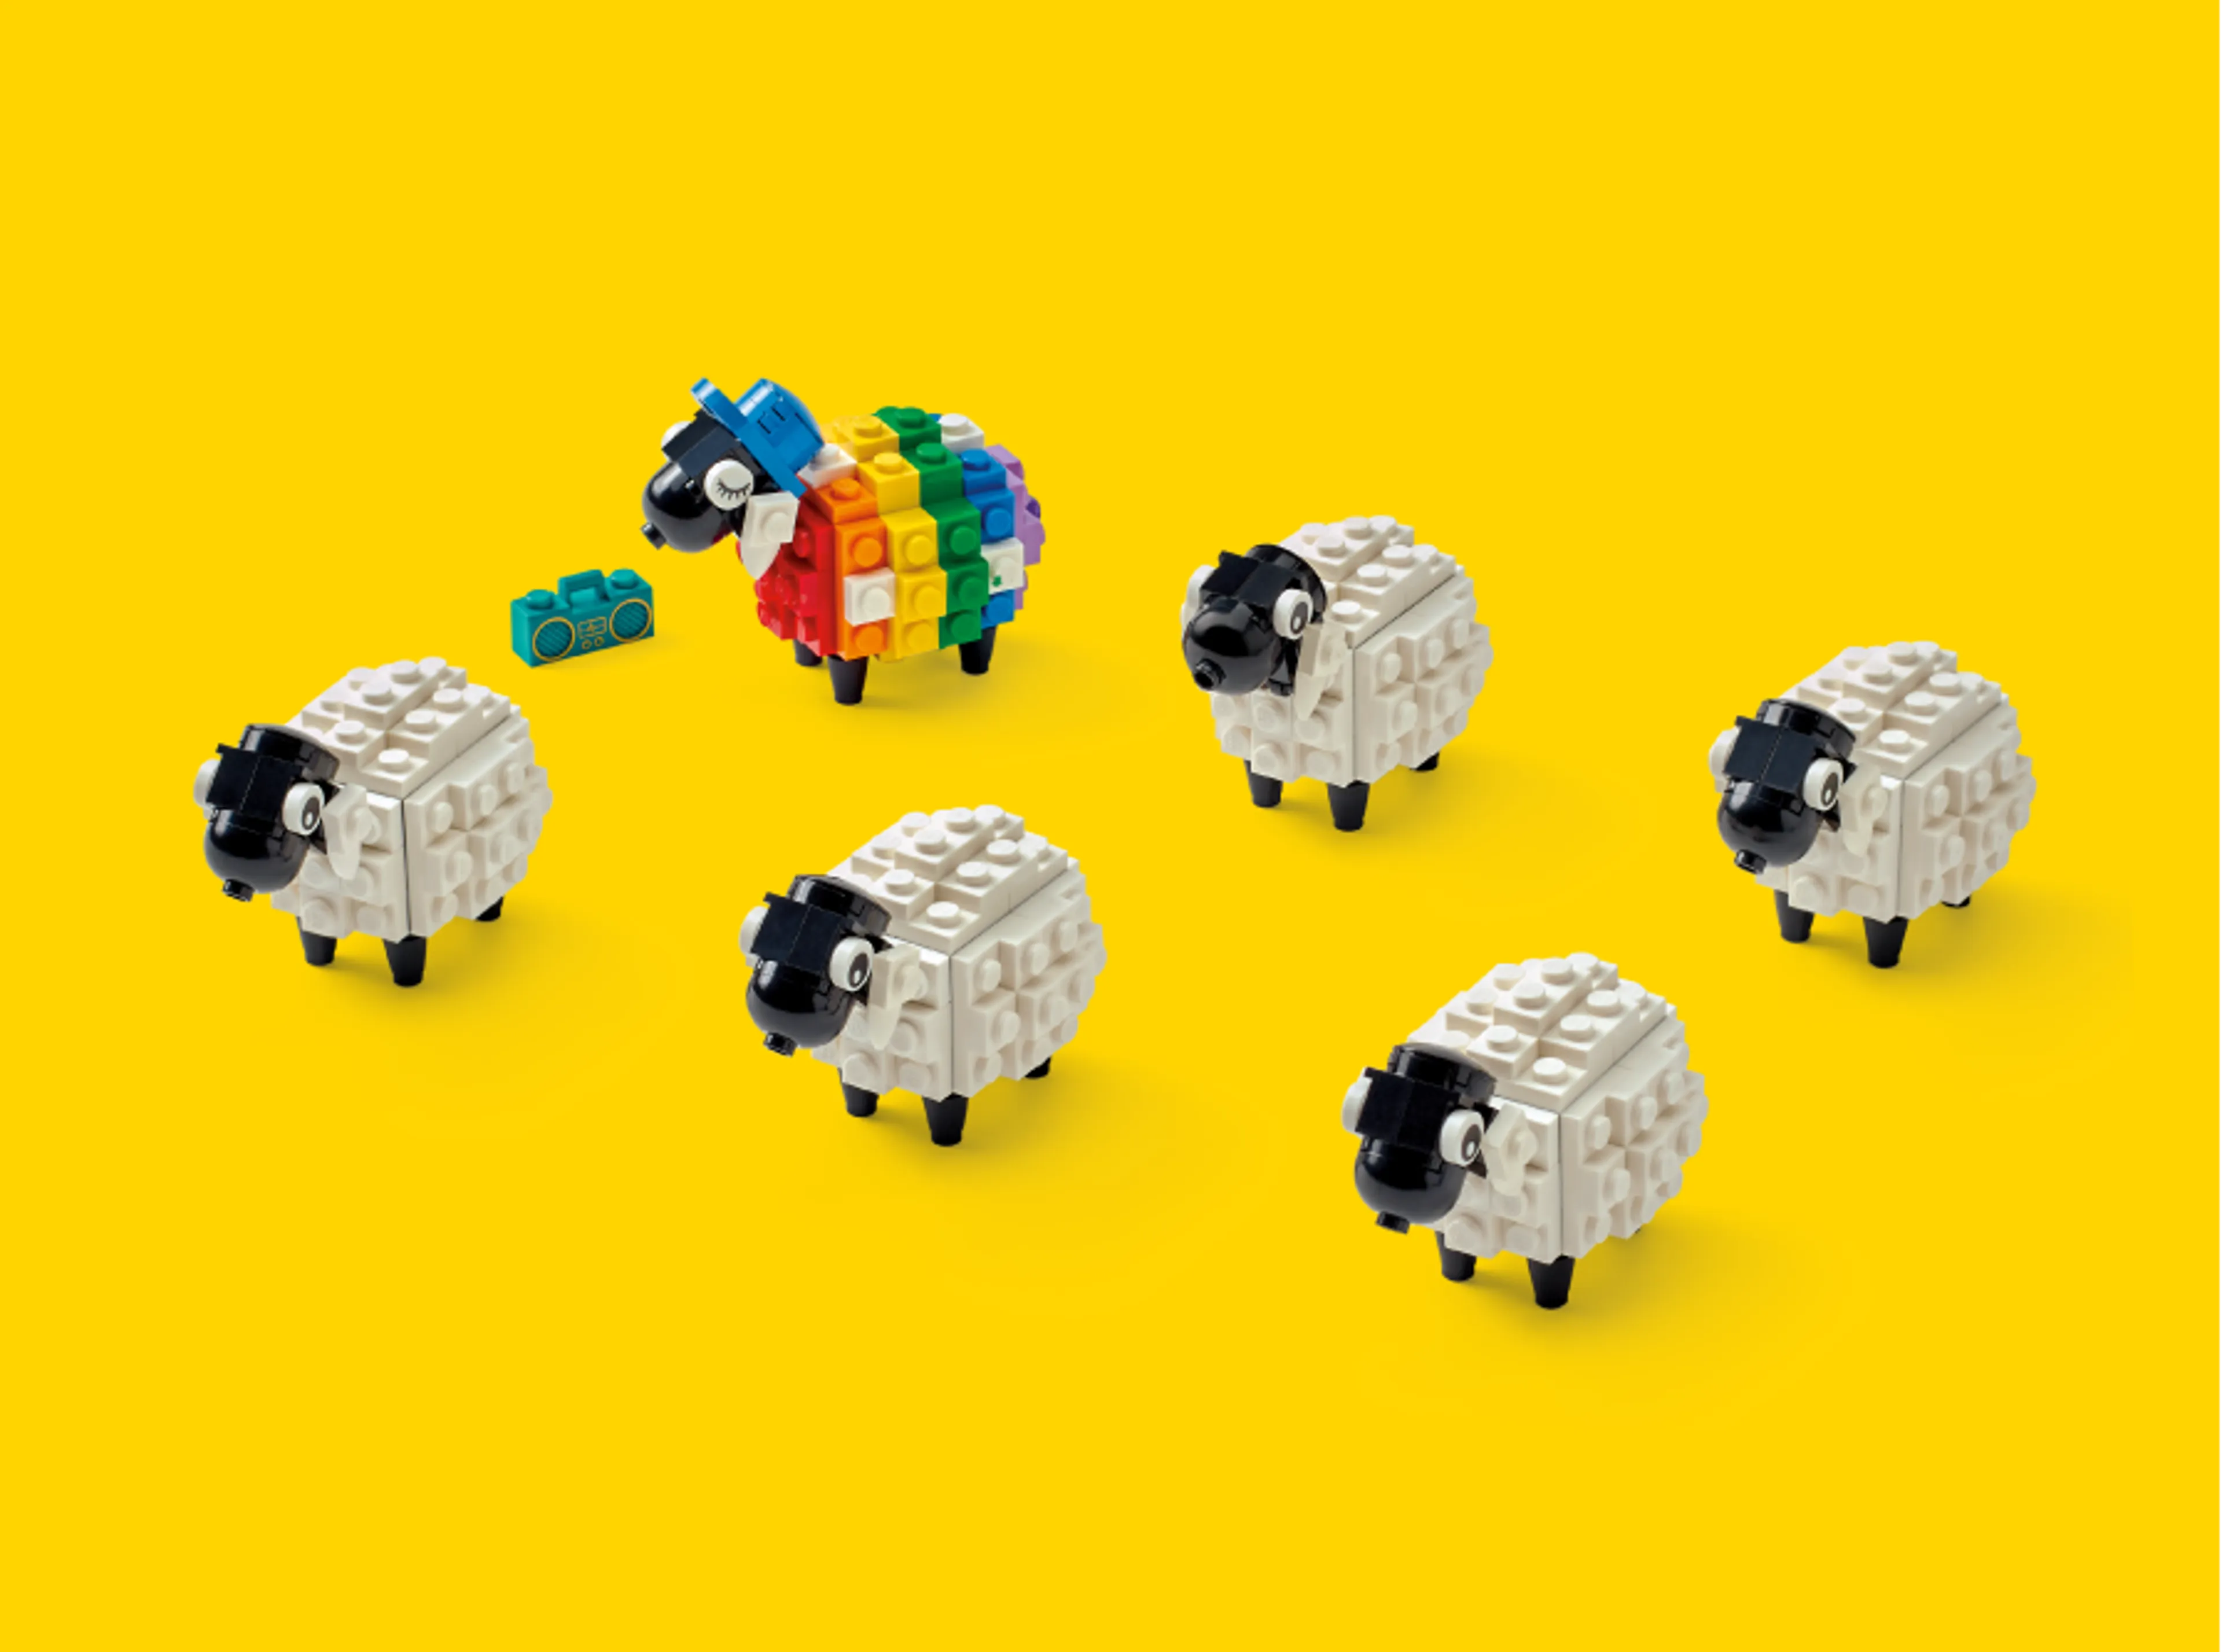 Een regenboogschaap omringd door normale schapen